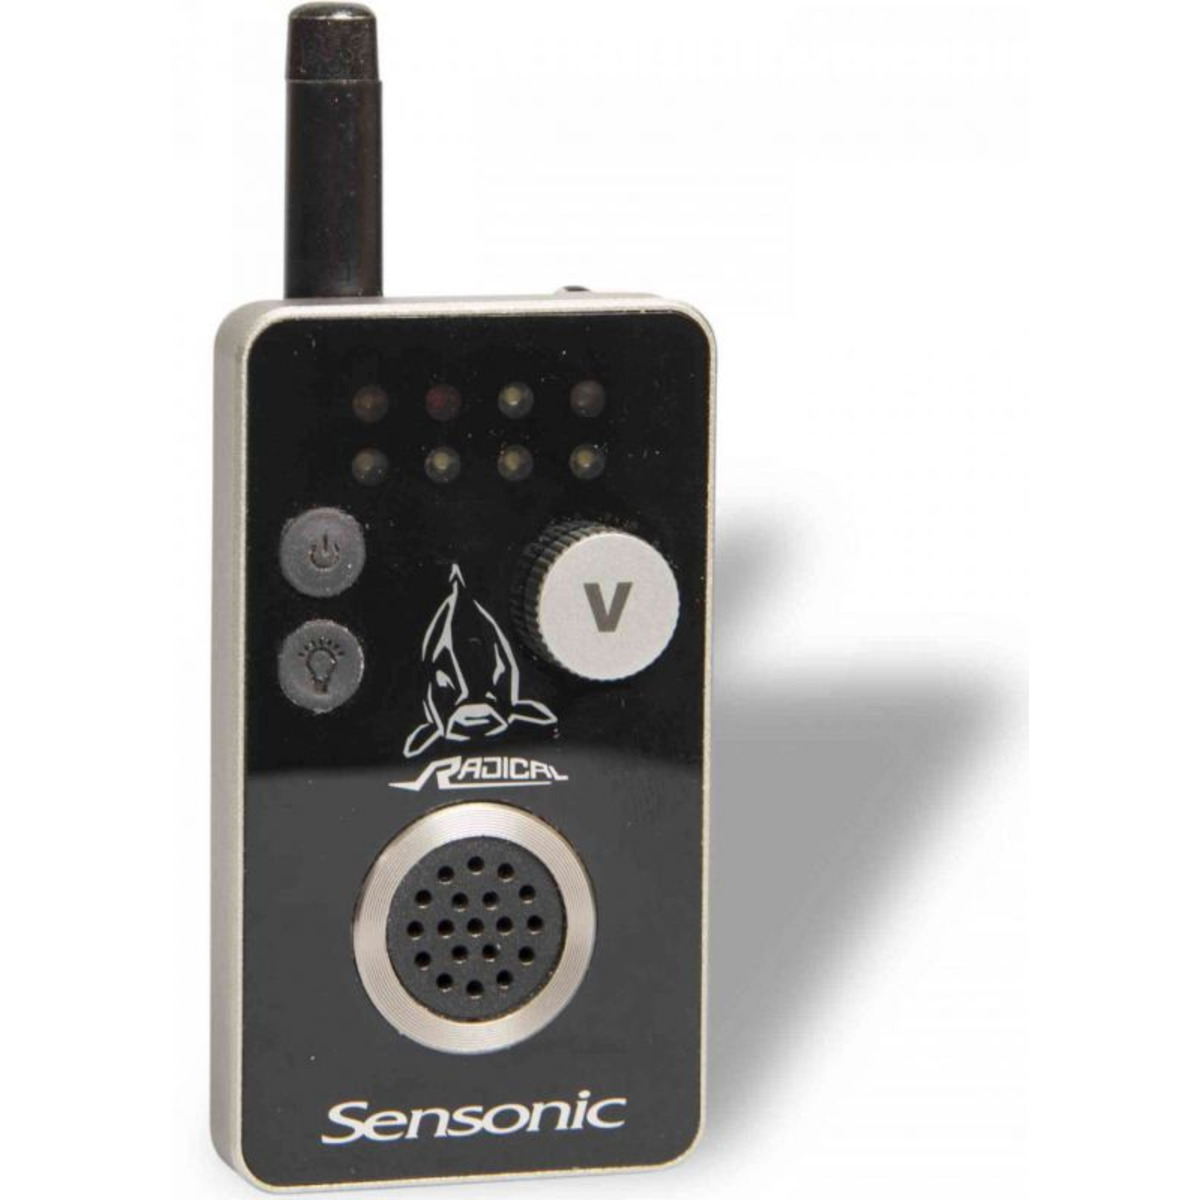 Radical Sensonic Bite Alarm Receiver - 4.0x9.5x2.6 cm